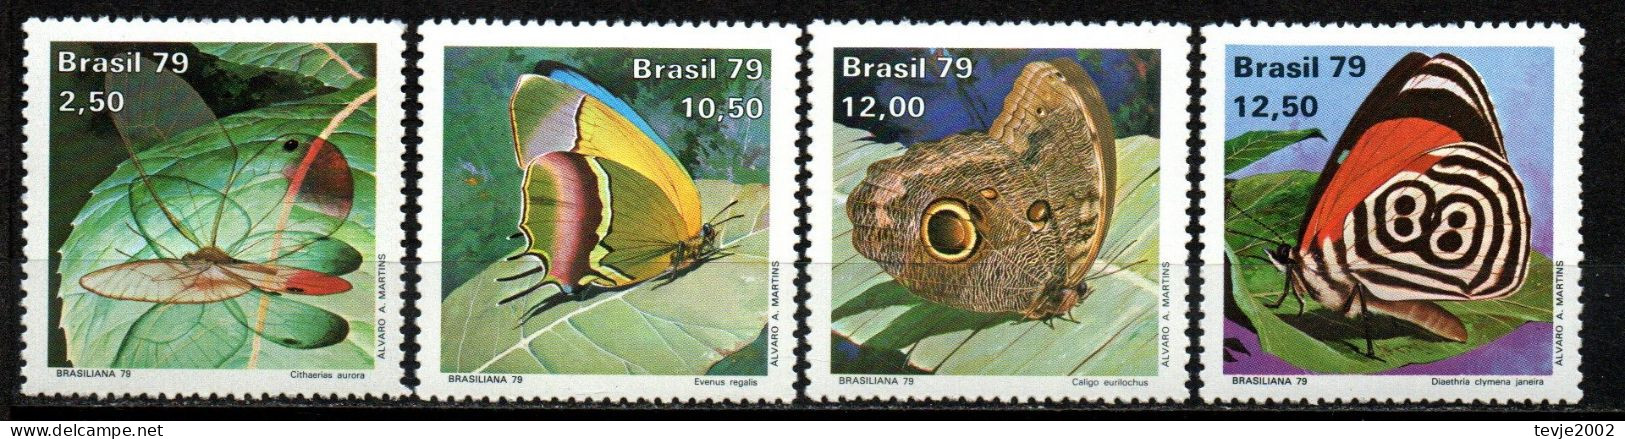 Brasilien 1979 - Mi.Nr. 1716 - 1719 - Postfrisch MNH - Tiere Animals Schmetterlinge Butterflies - Vlinders